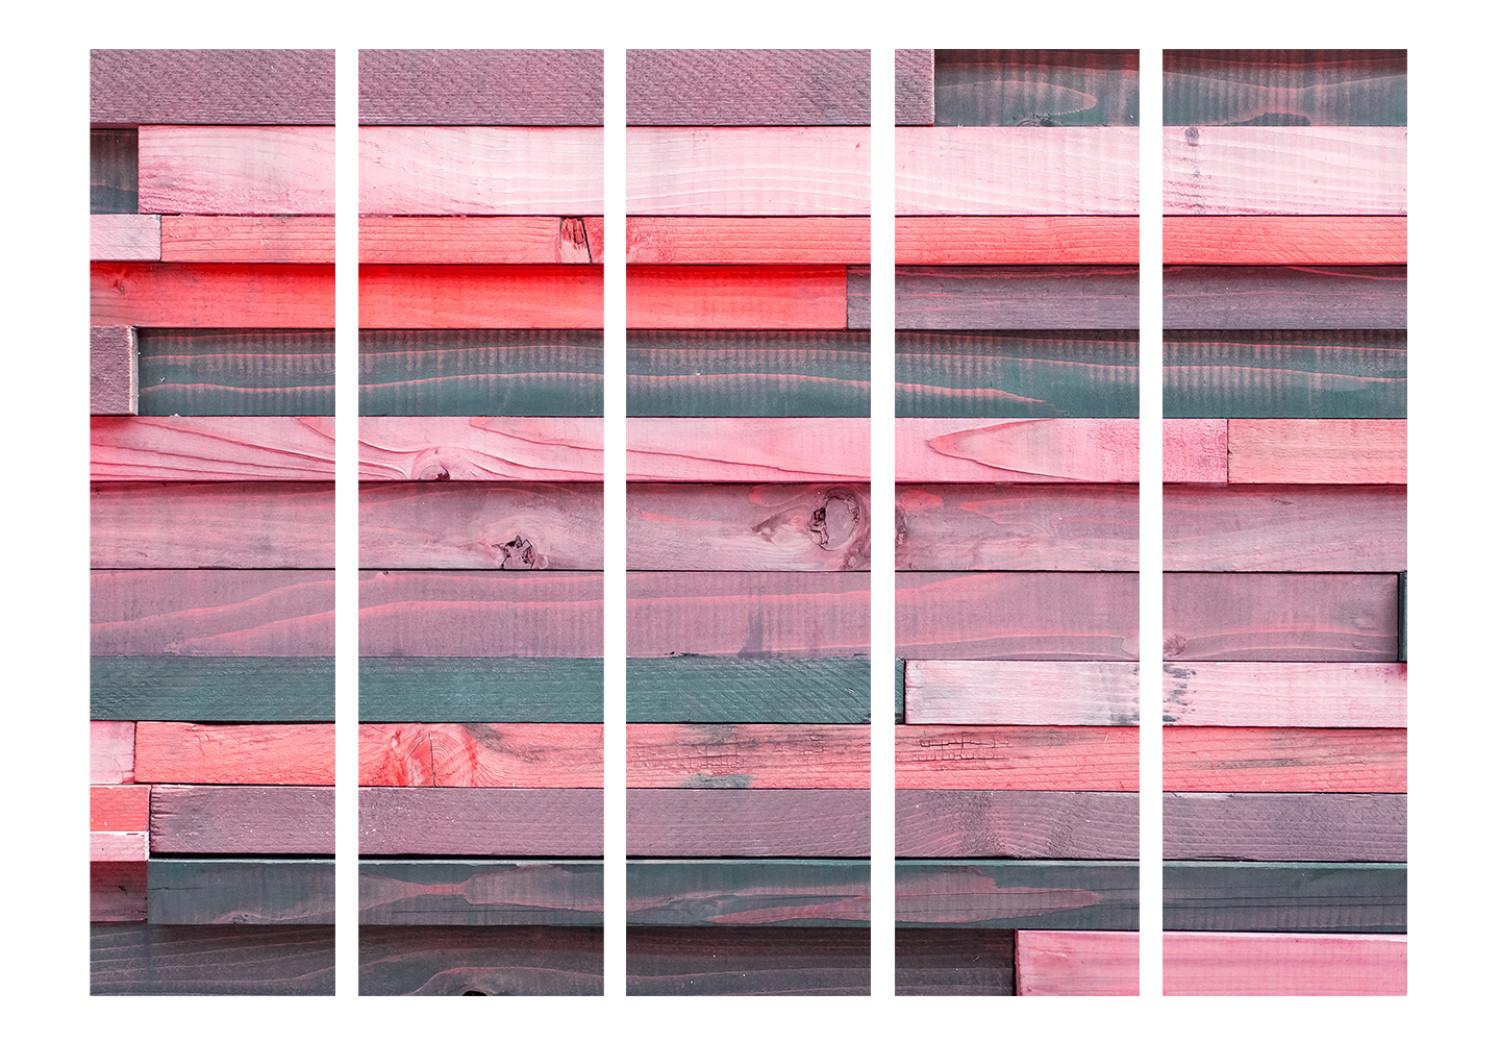 Biombo barato Casa rosada II (5 partes) - listones de madera en tonos rosados